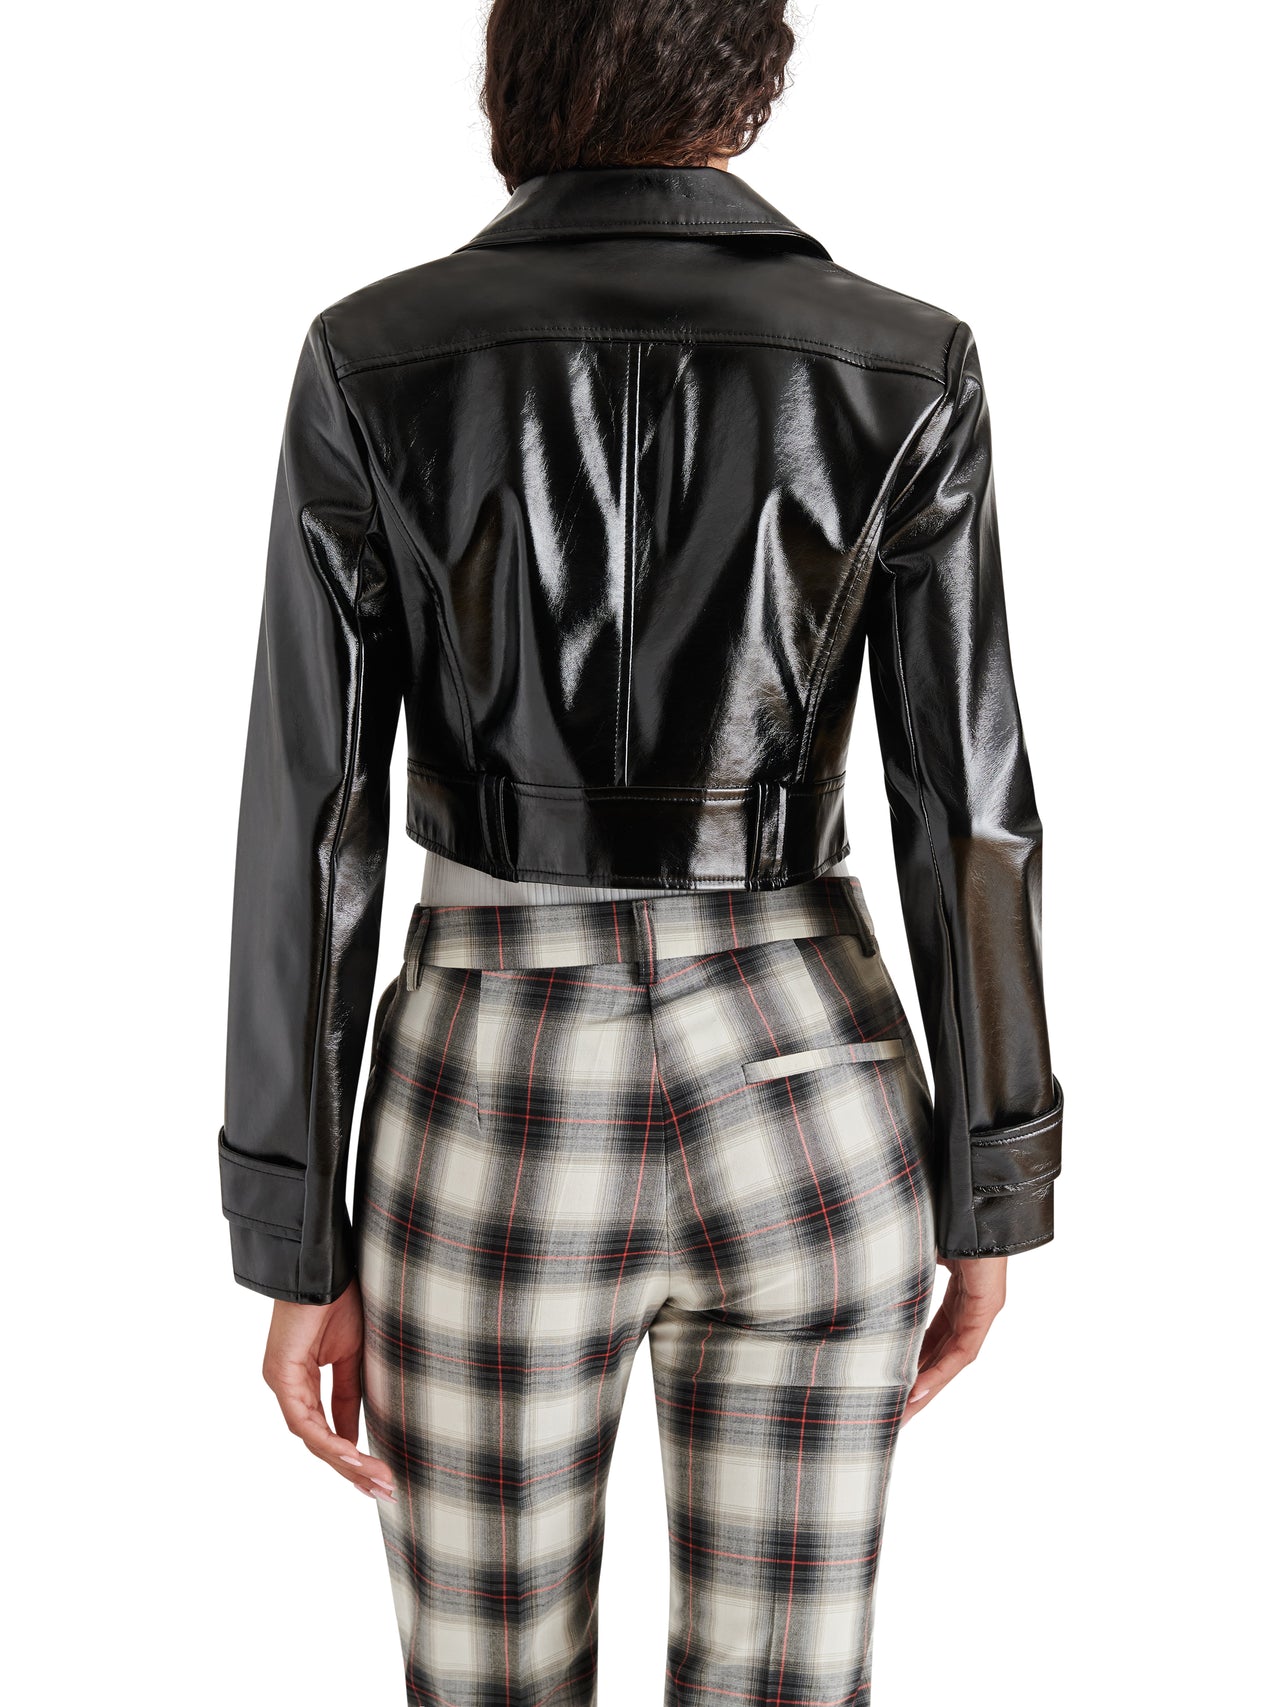 Maddie Jacket Black, Jacket by Steve Madden | LIT Boutique